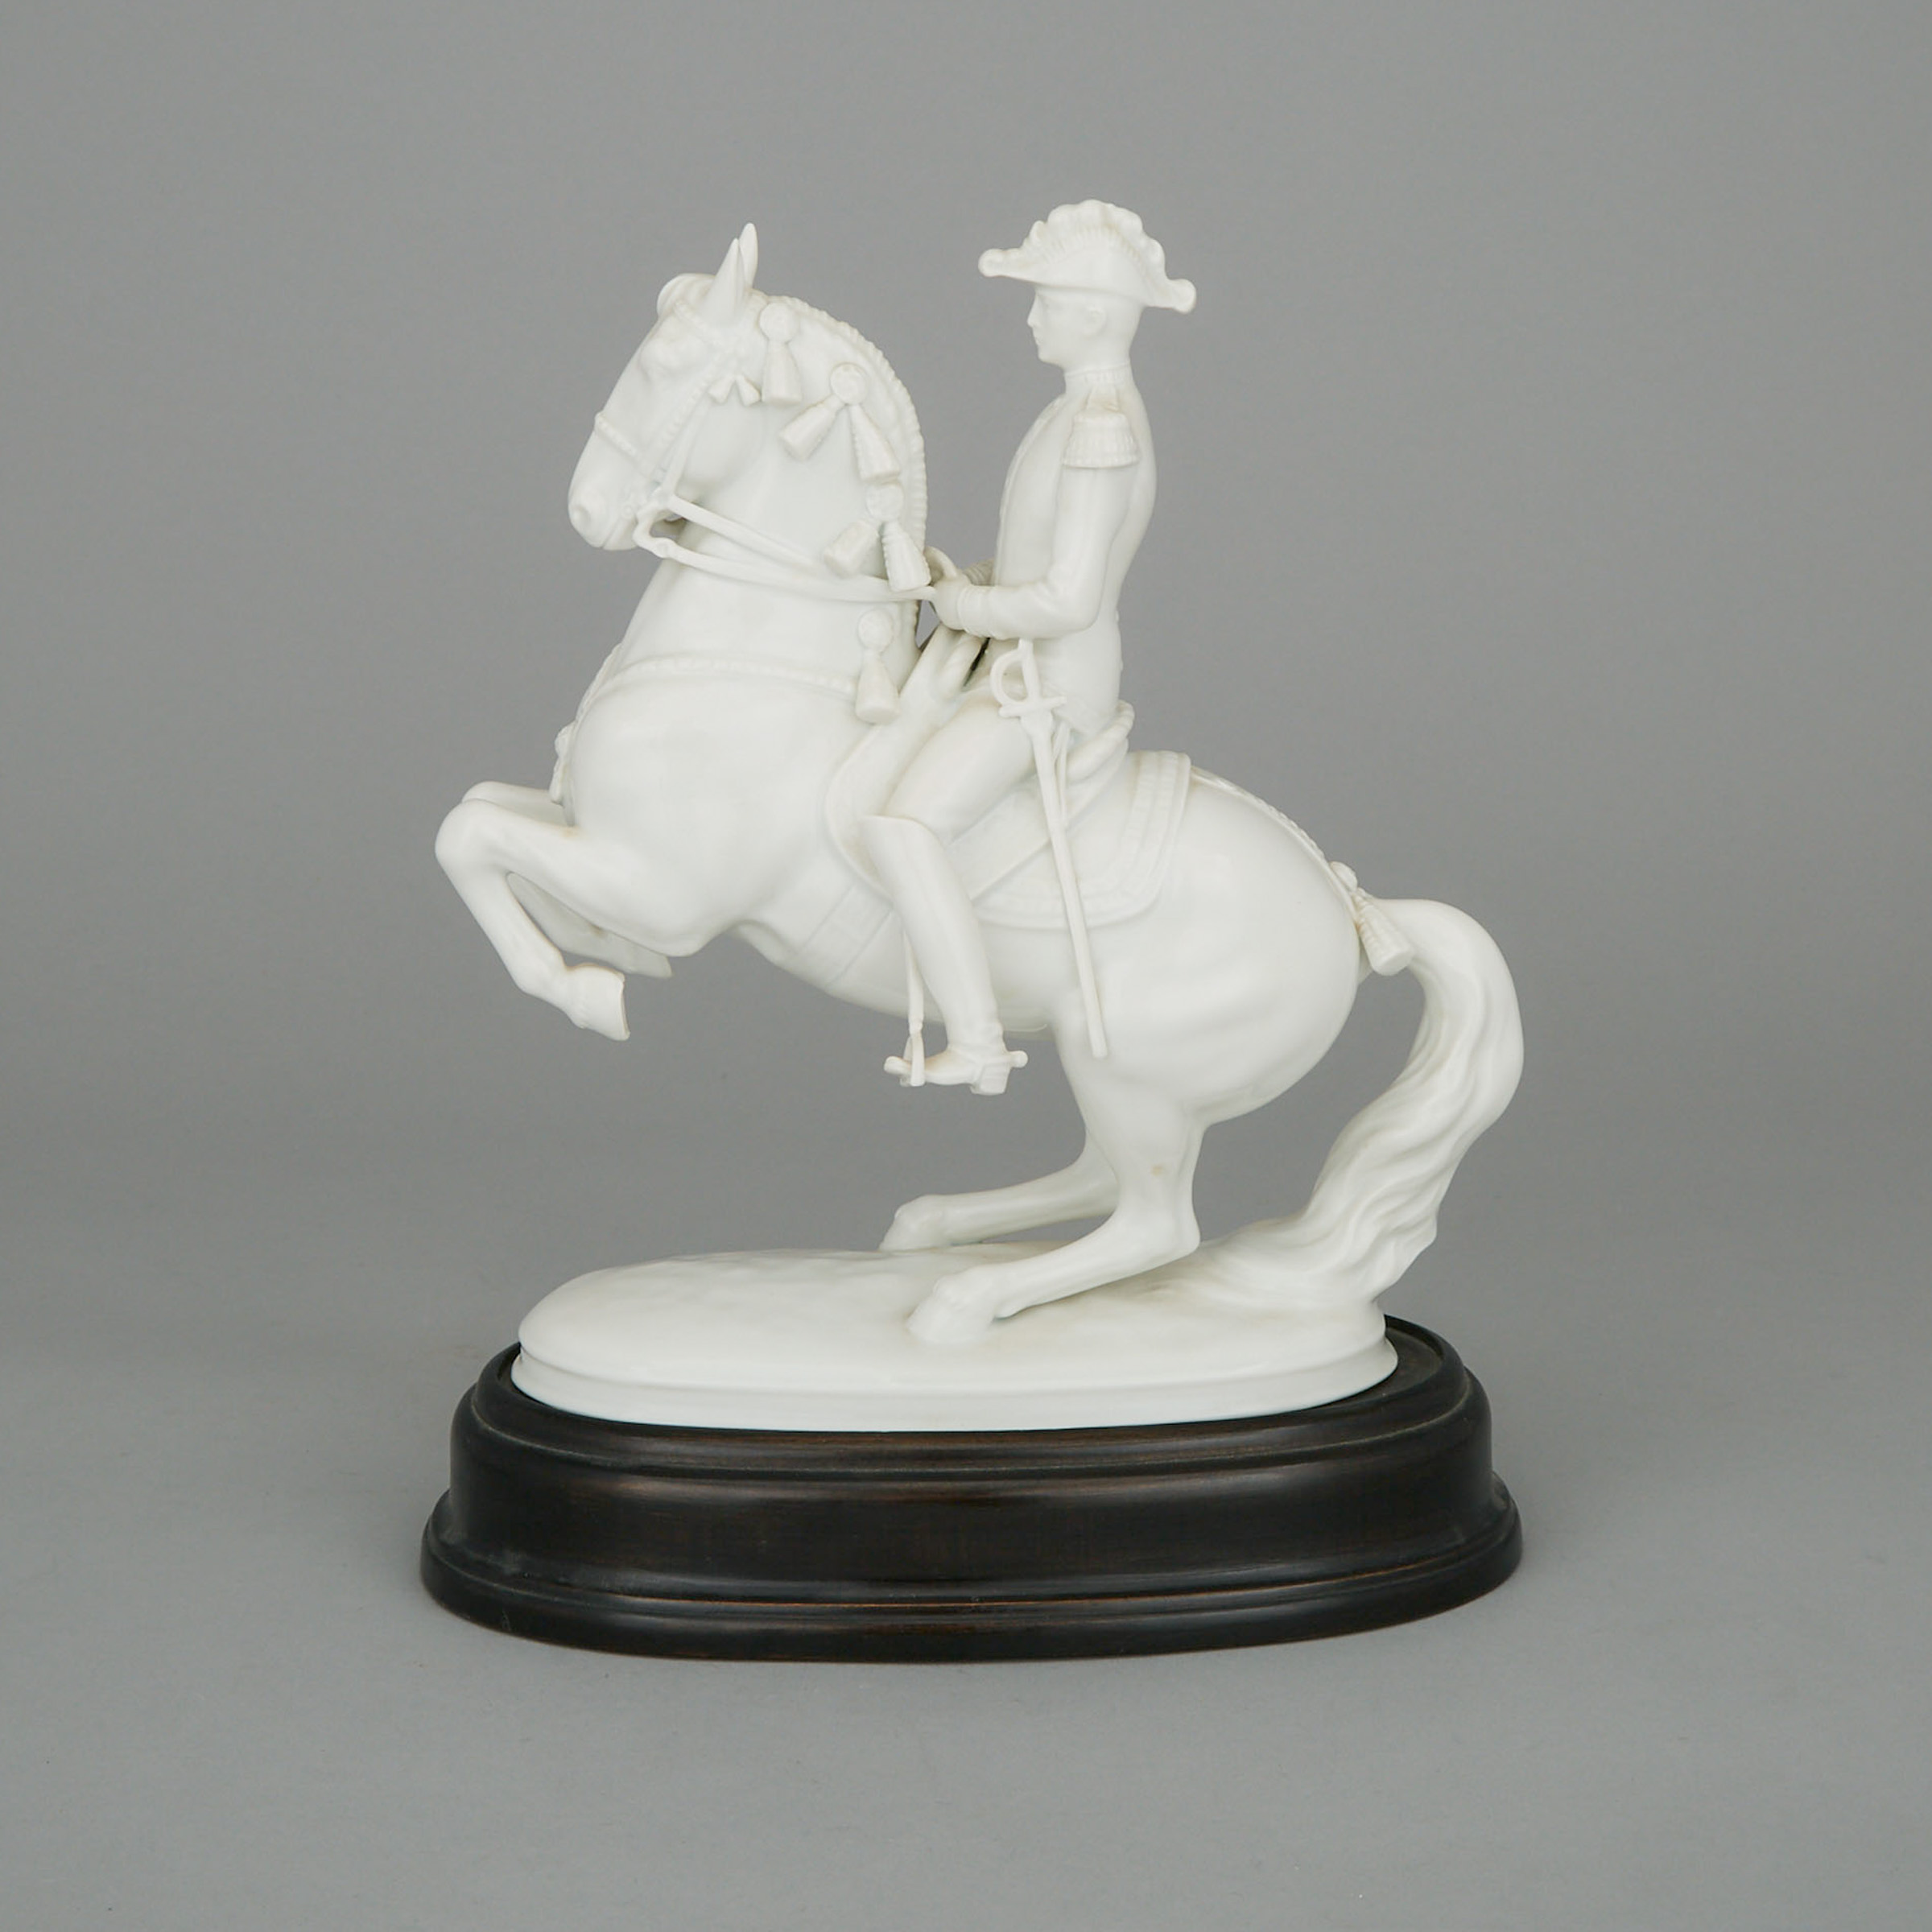 Augarten Vienna White Glazed Equestrian Figure, Albin Döbrich, 20th century